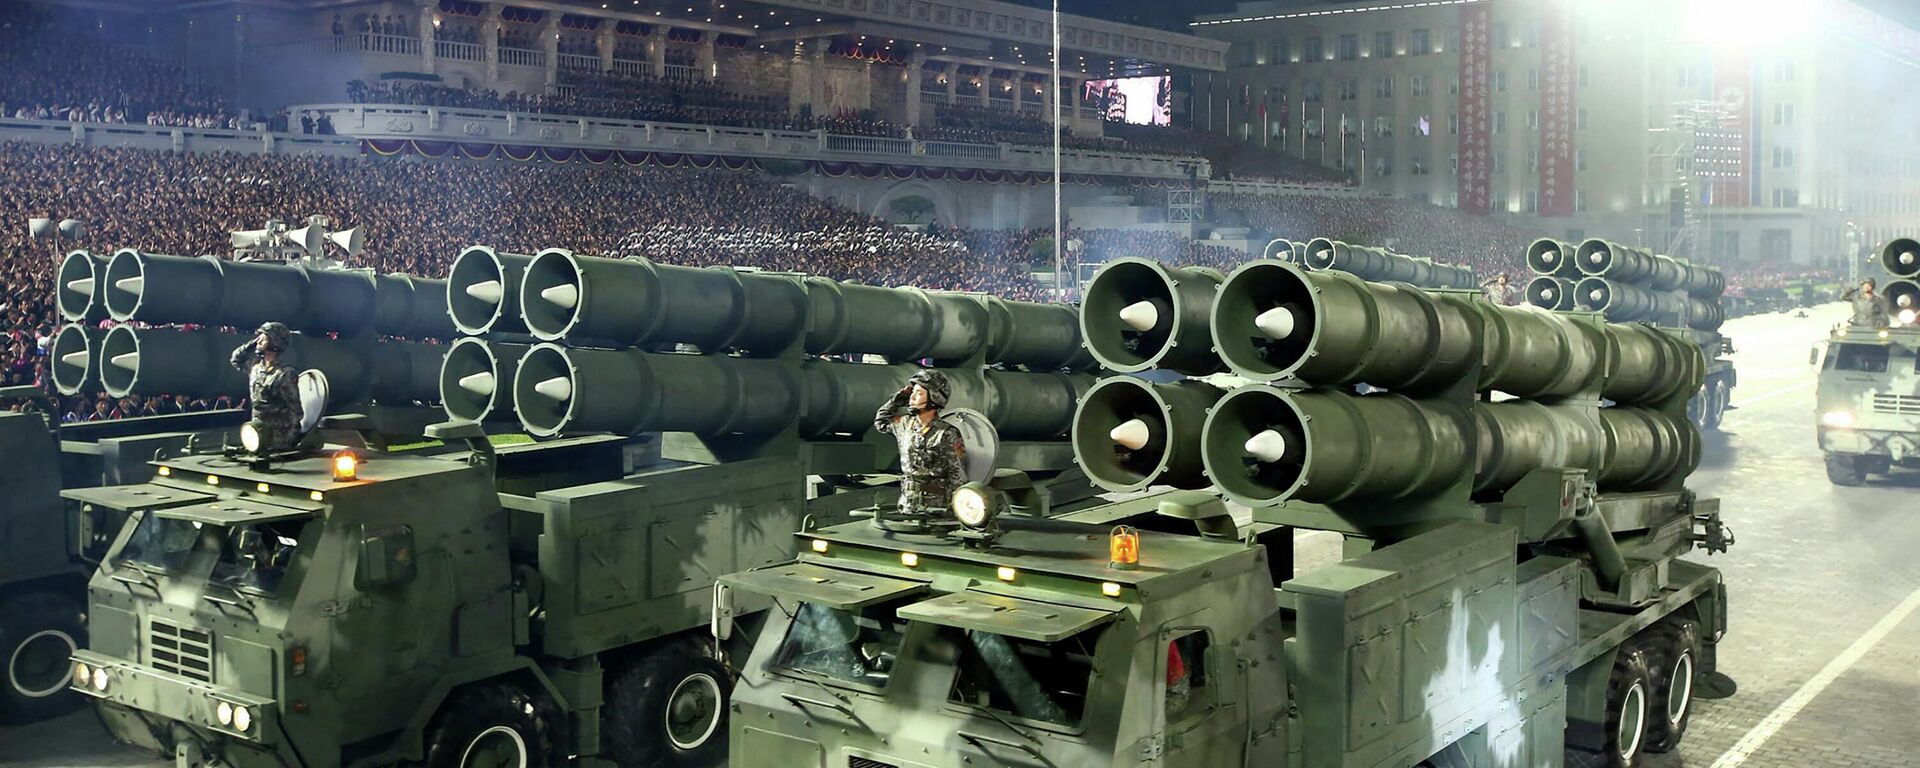 قاذفات صواريخ خلال عرض عسكري للاحتفال بالذكرى الـ90 لتأسيس الجيش الثوري الشعبي الكوري الشمالي في كيم إيل. ساحة سونغ في بيونغ يانغ. 25 أبريل 2022 - سبوتنيك عربي, 1920, 02.01.2023